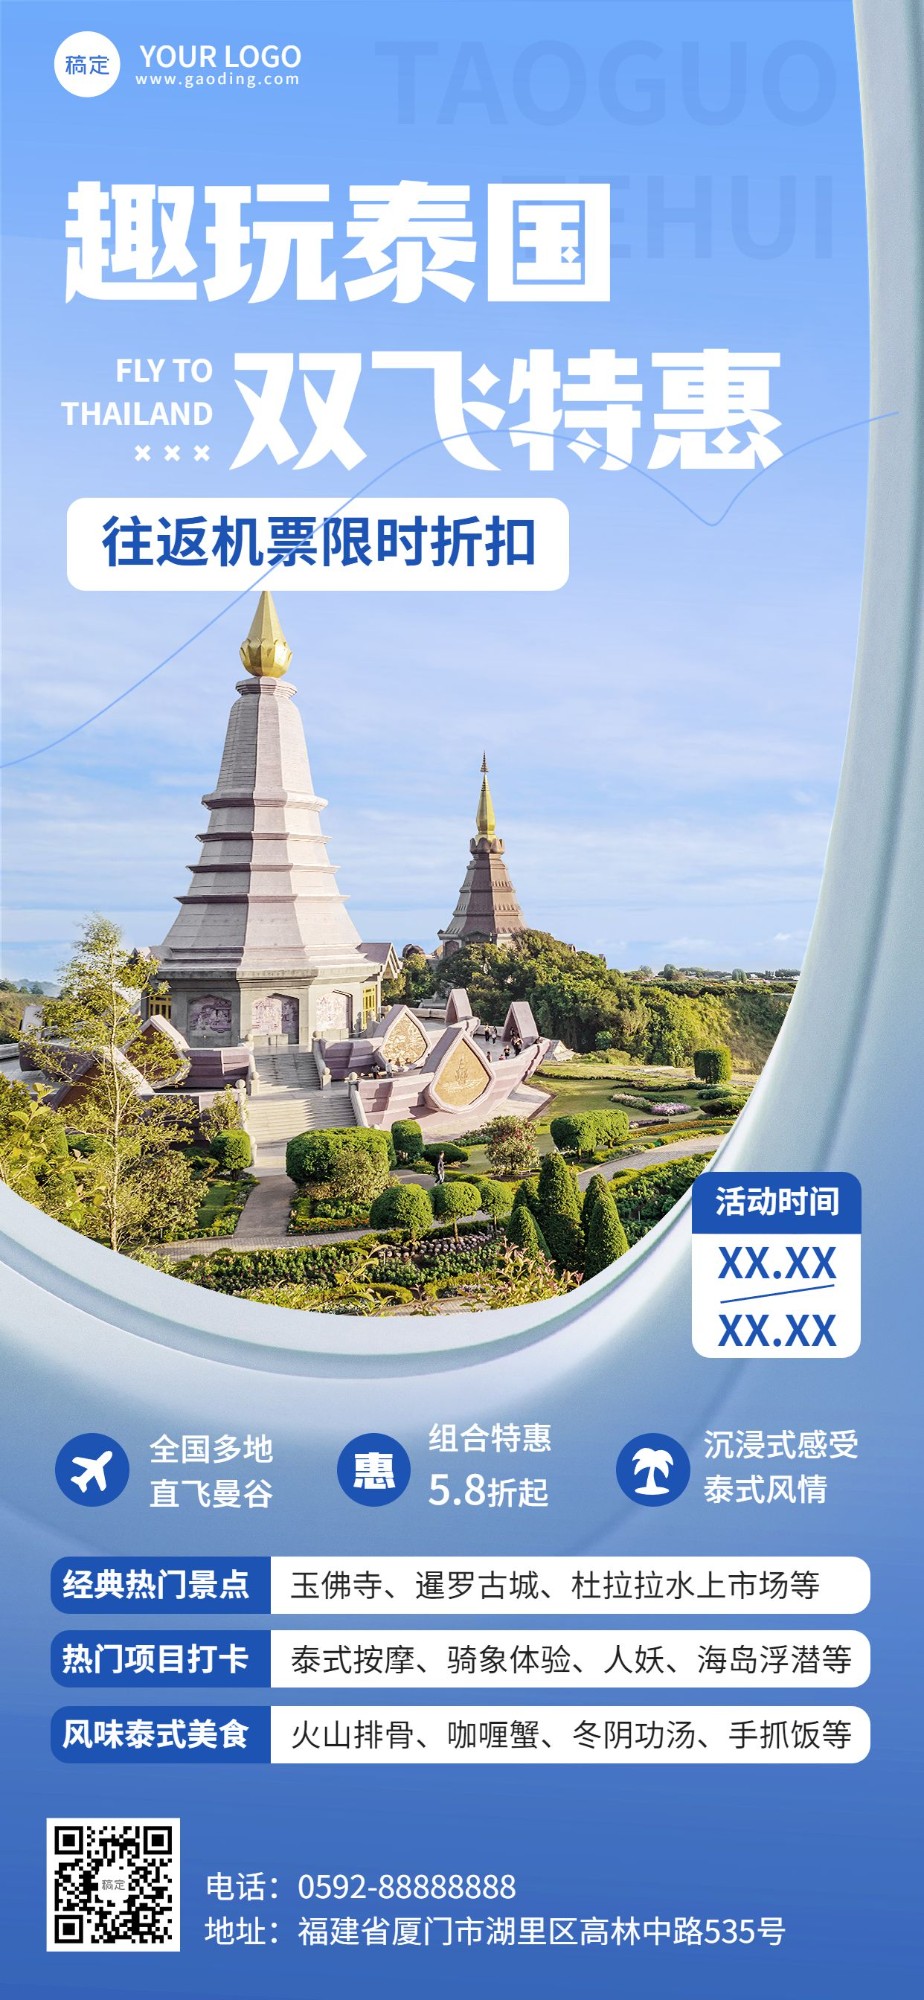 旅游出行泰国旅游机票促销飞机舷窗元素设计全屏竖版海报